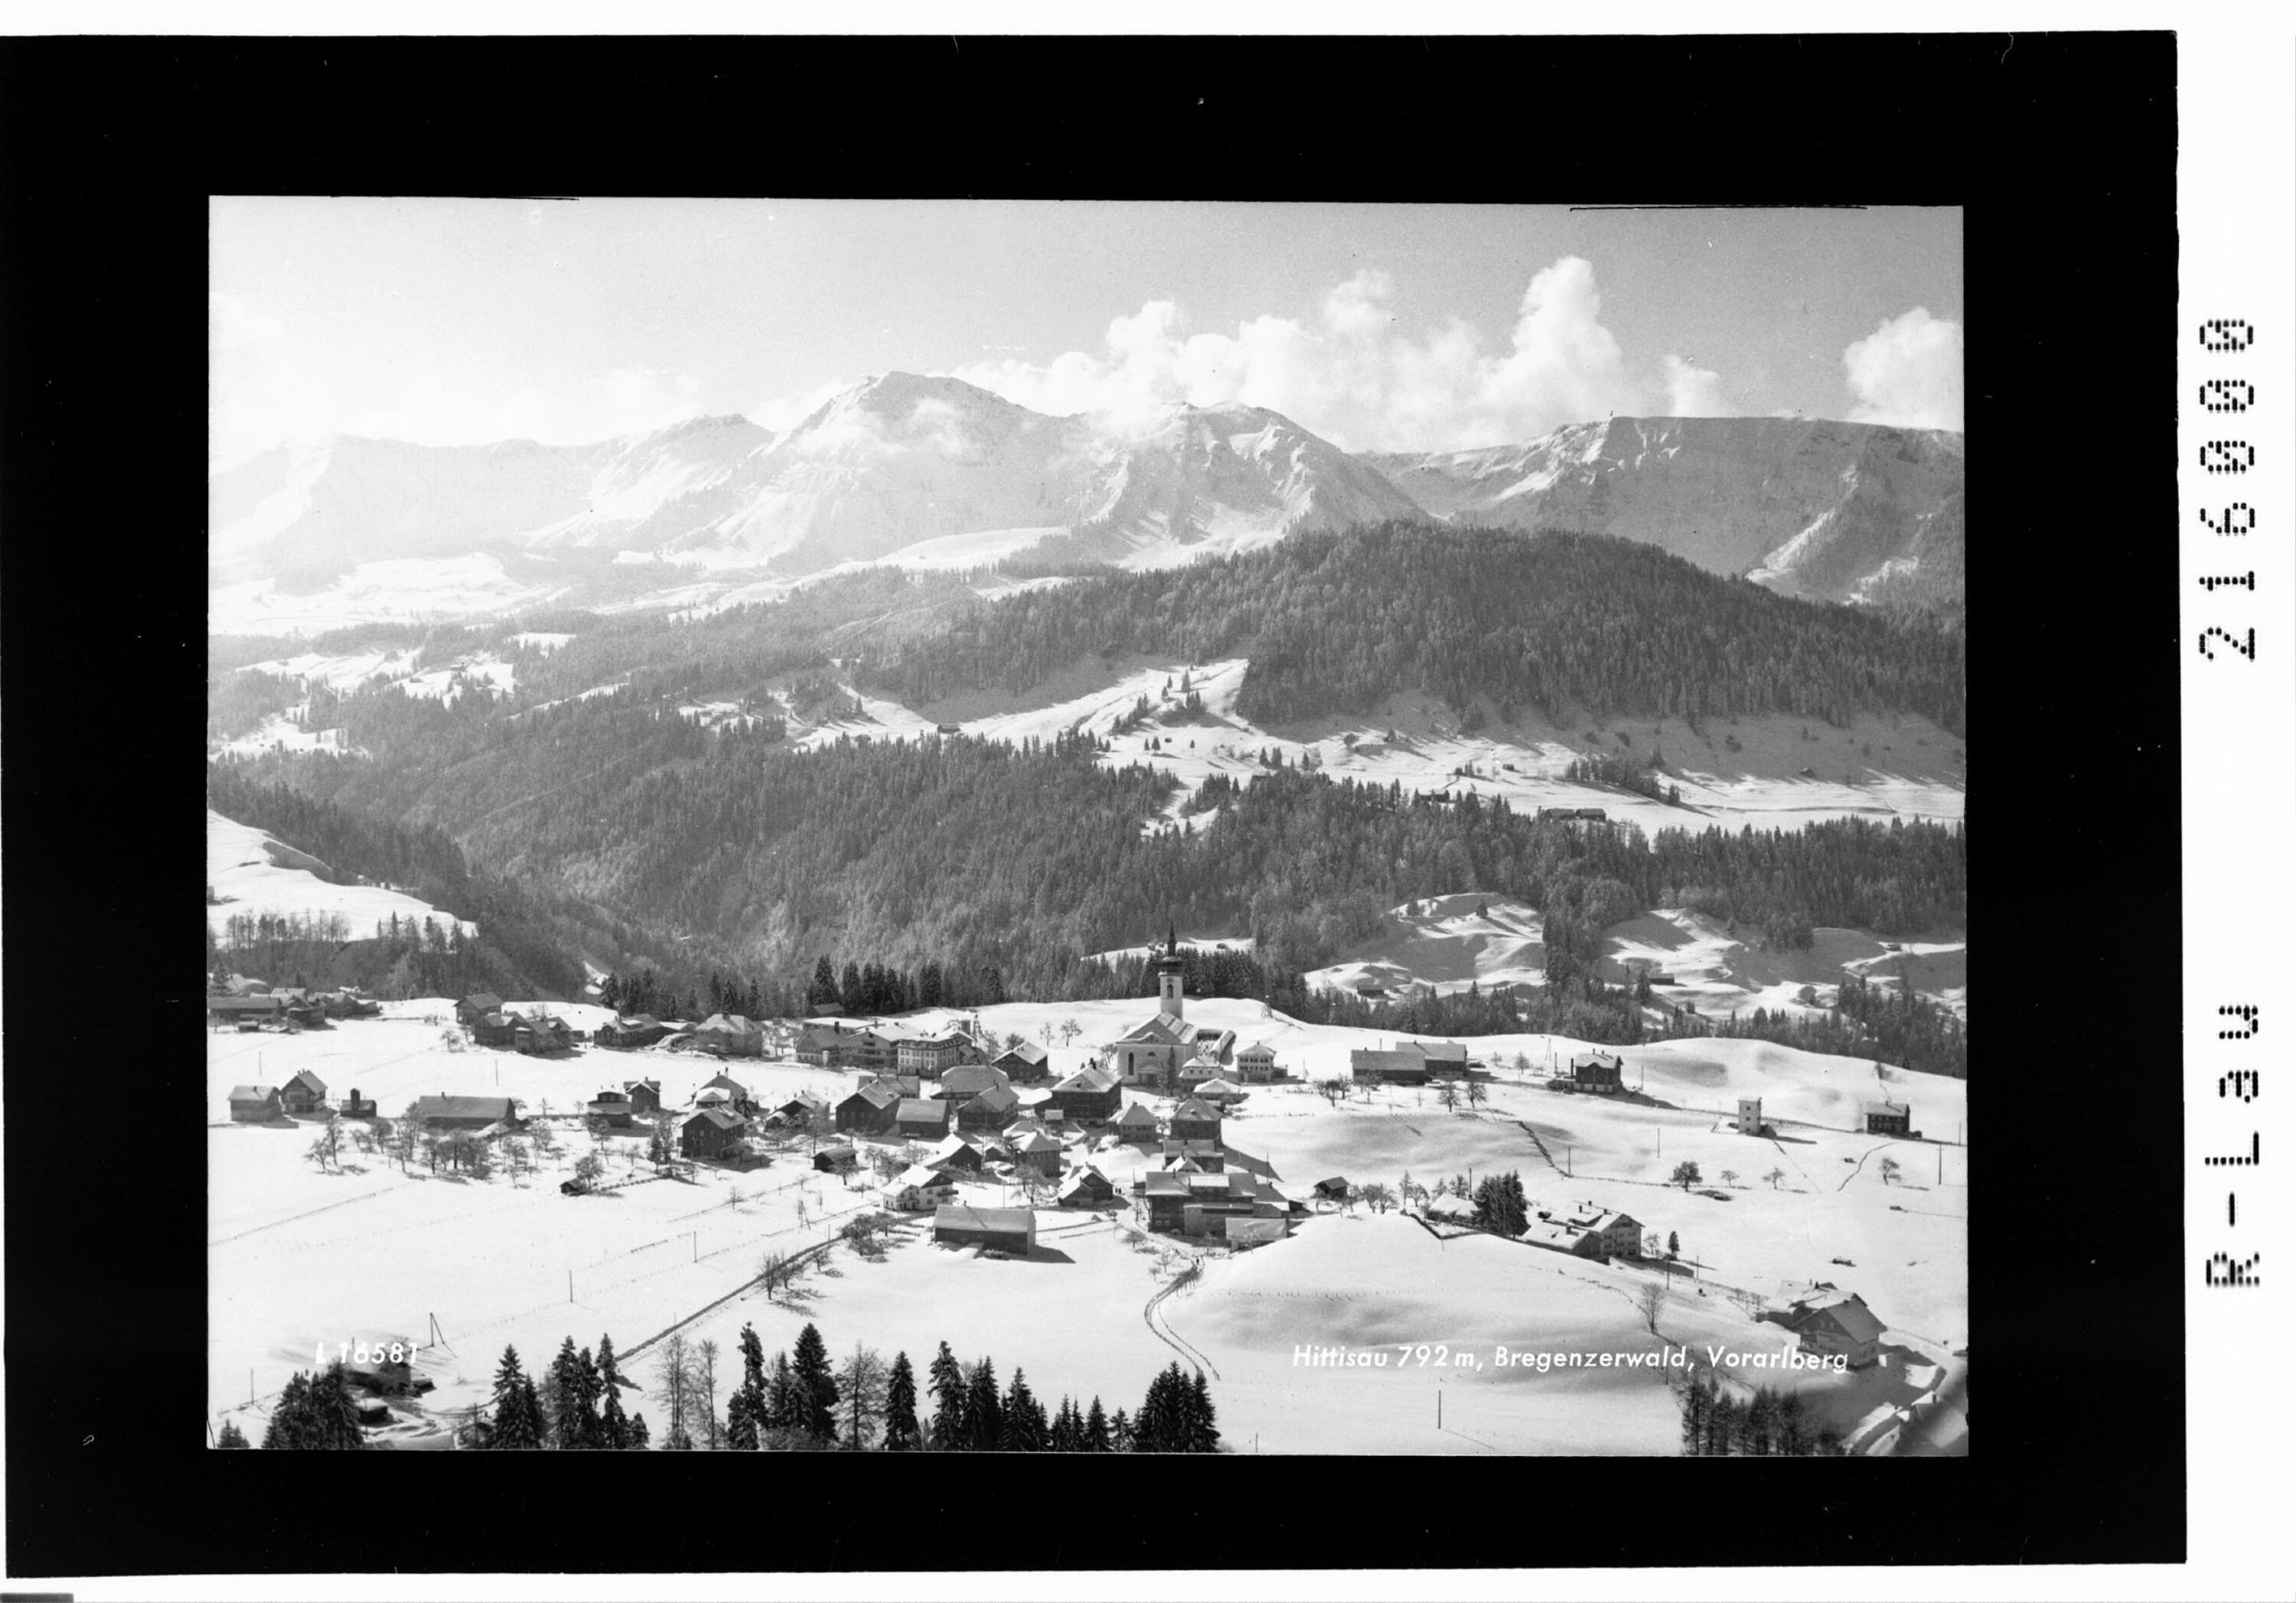 Hittisau 792 m, Bregenzerwald, Vorarlberg></div>


    <hr>
    <div class=